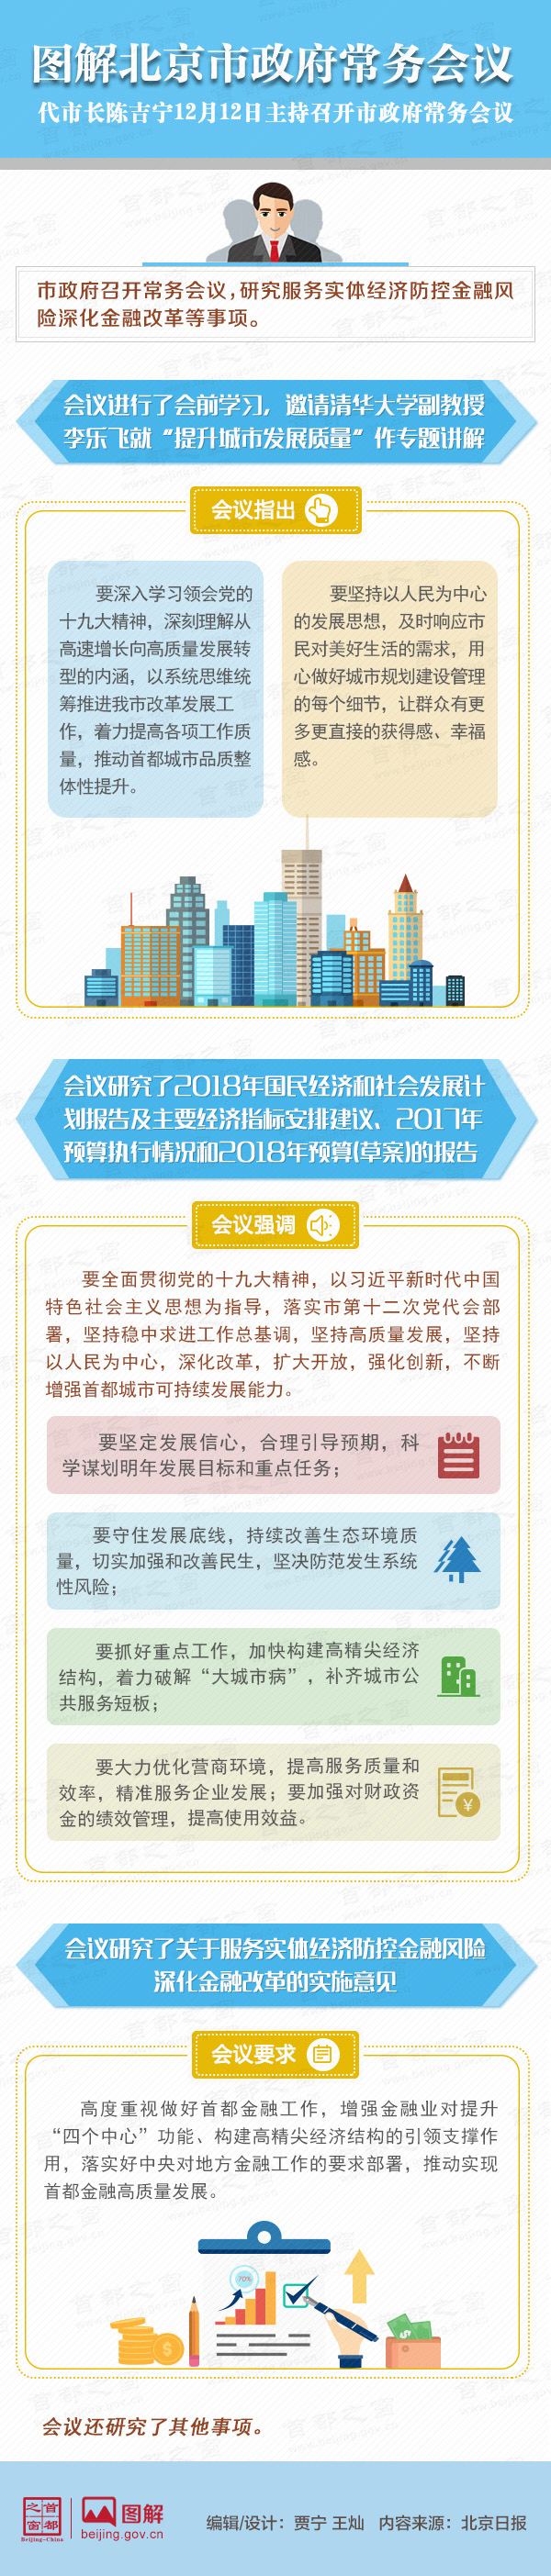 图解2017年12月12日北京市政府常务会议